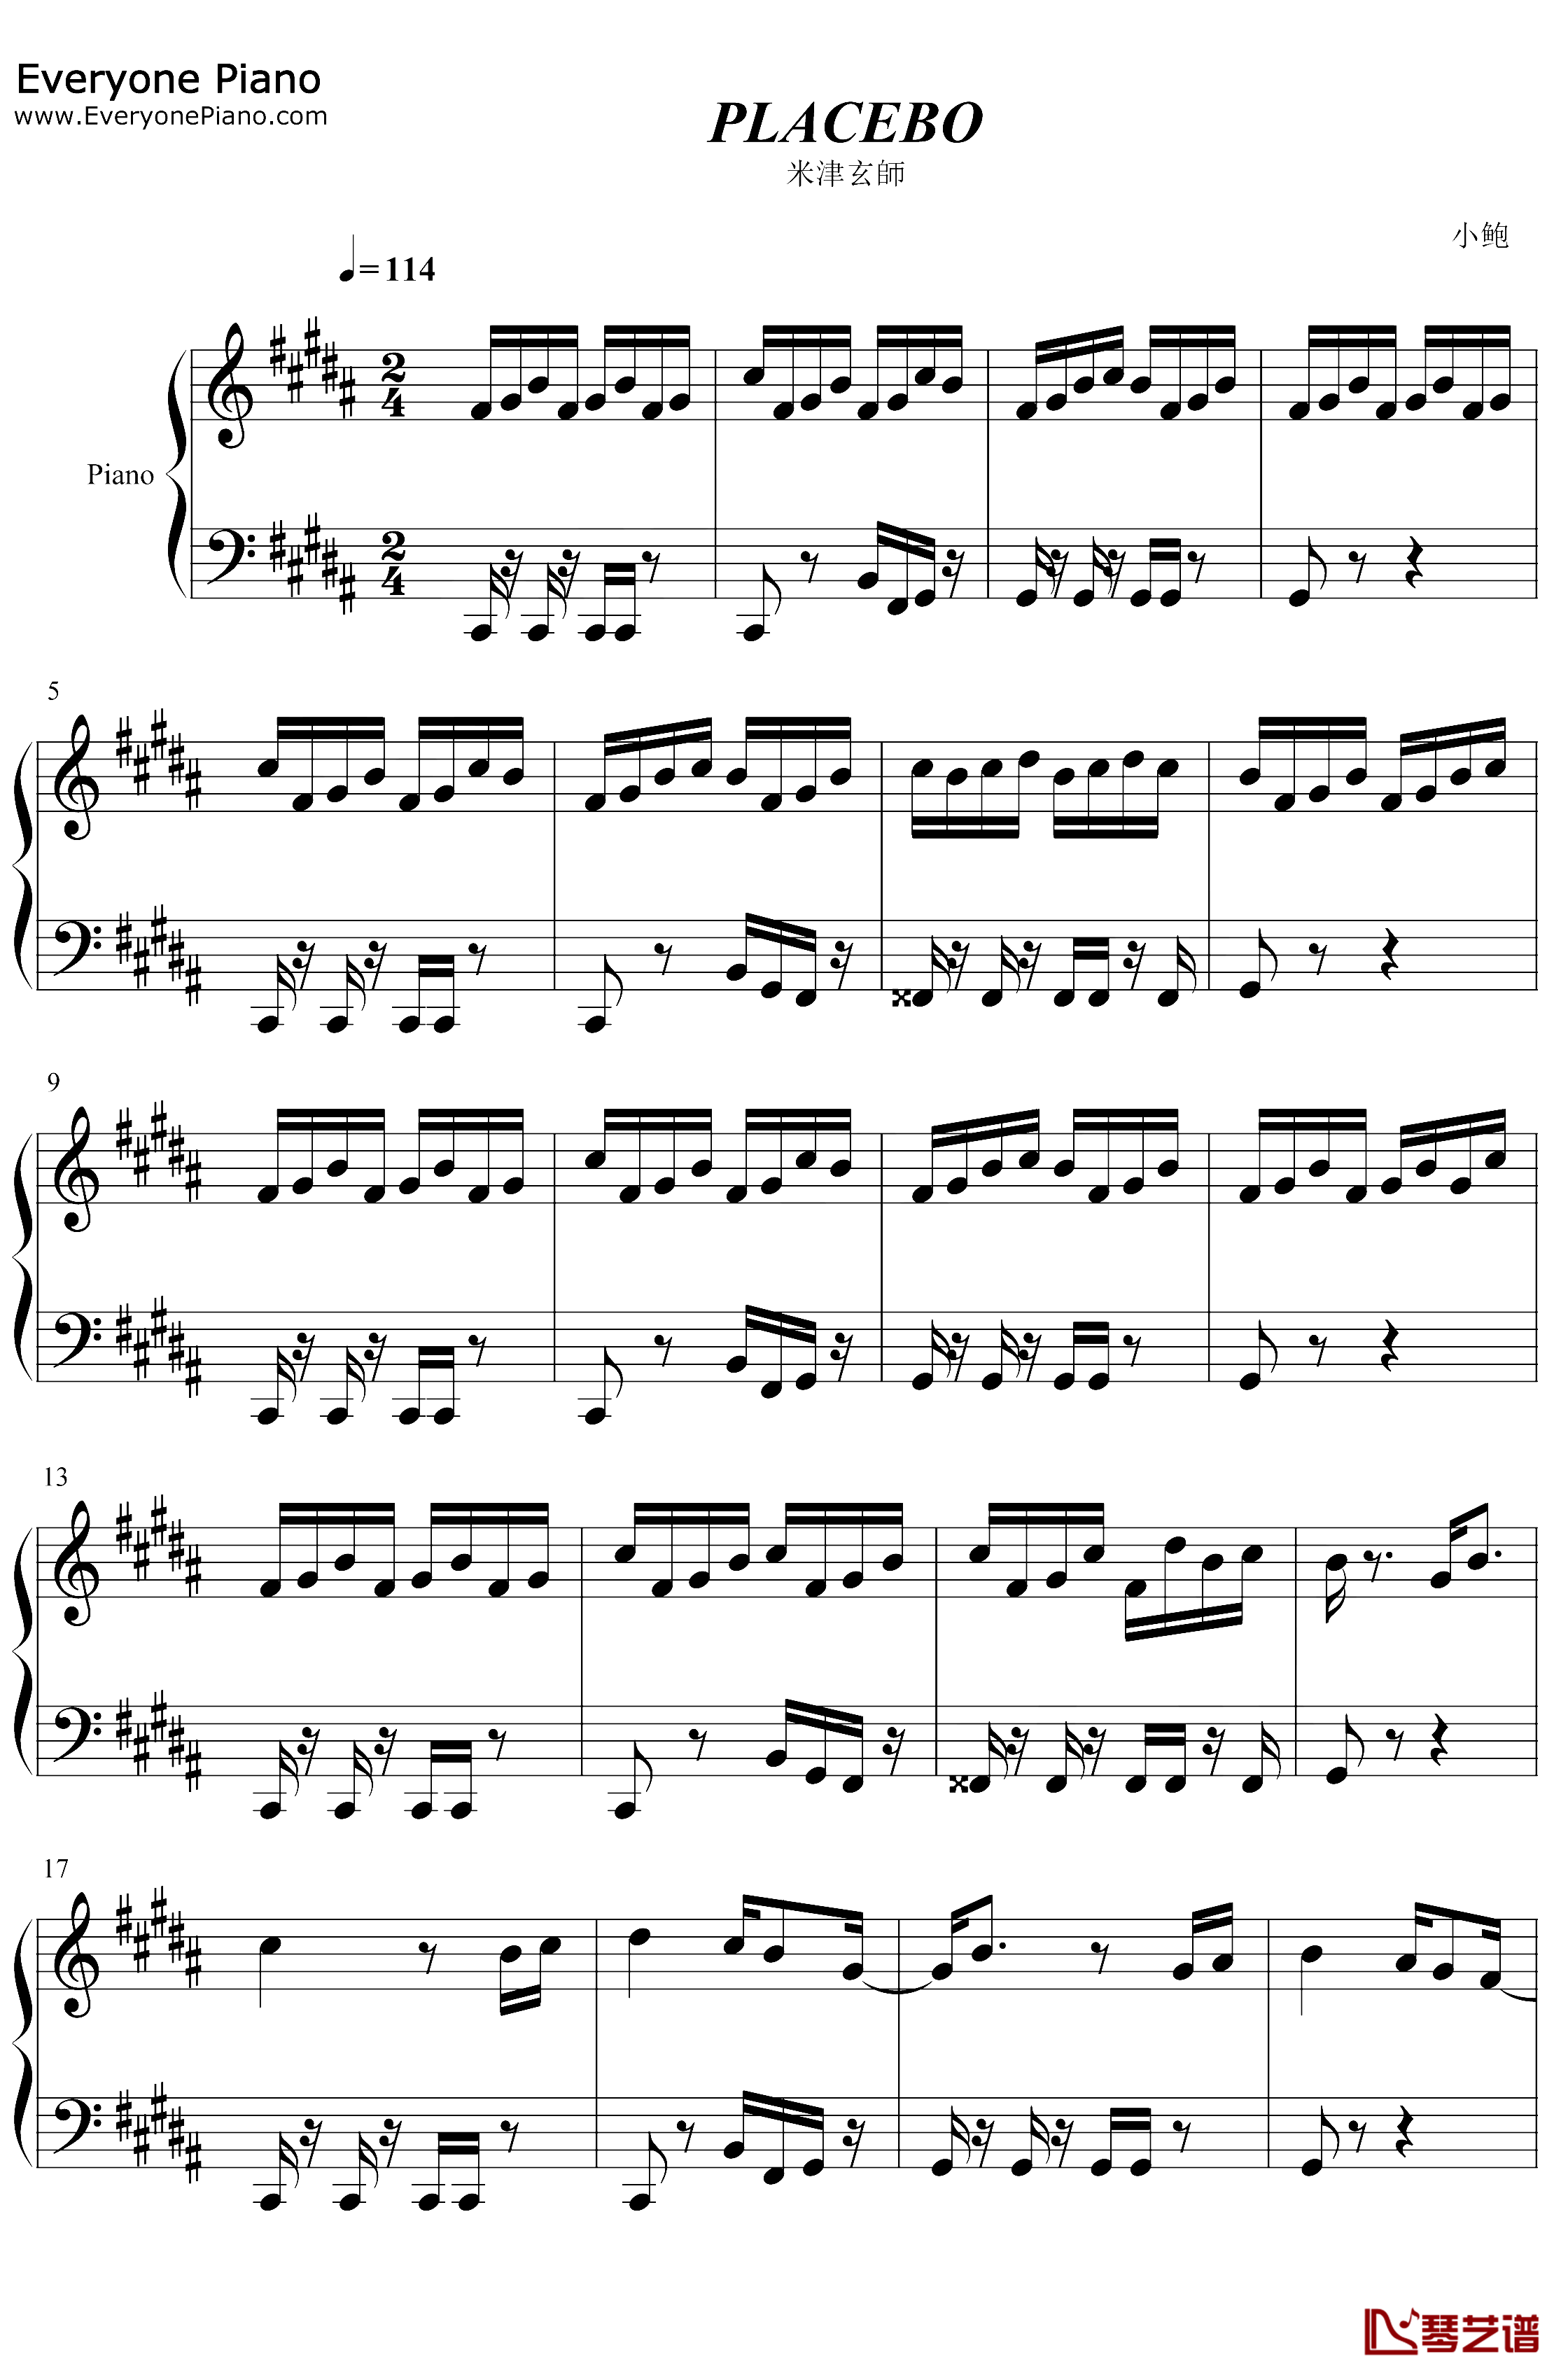 PLACEBO钢琴谱-米津玄師野田洋次郎-米津玄师与野田洋次郎的神仙合作1